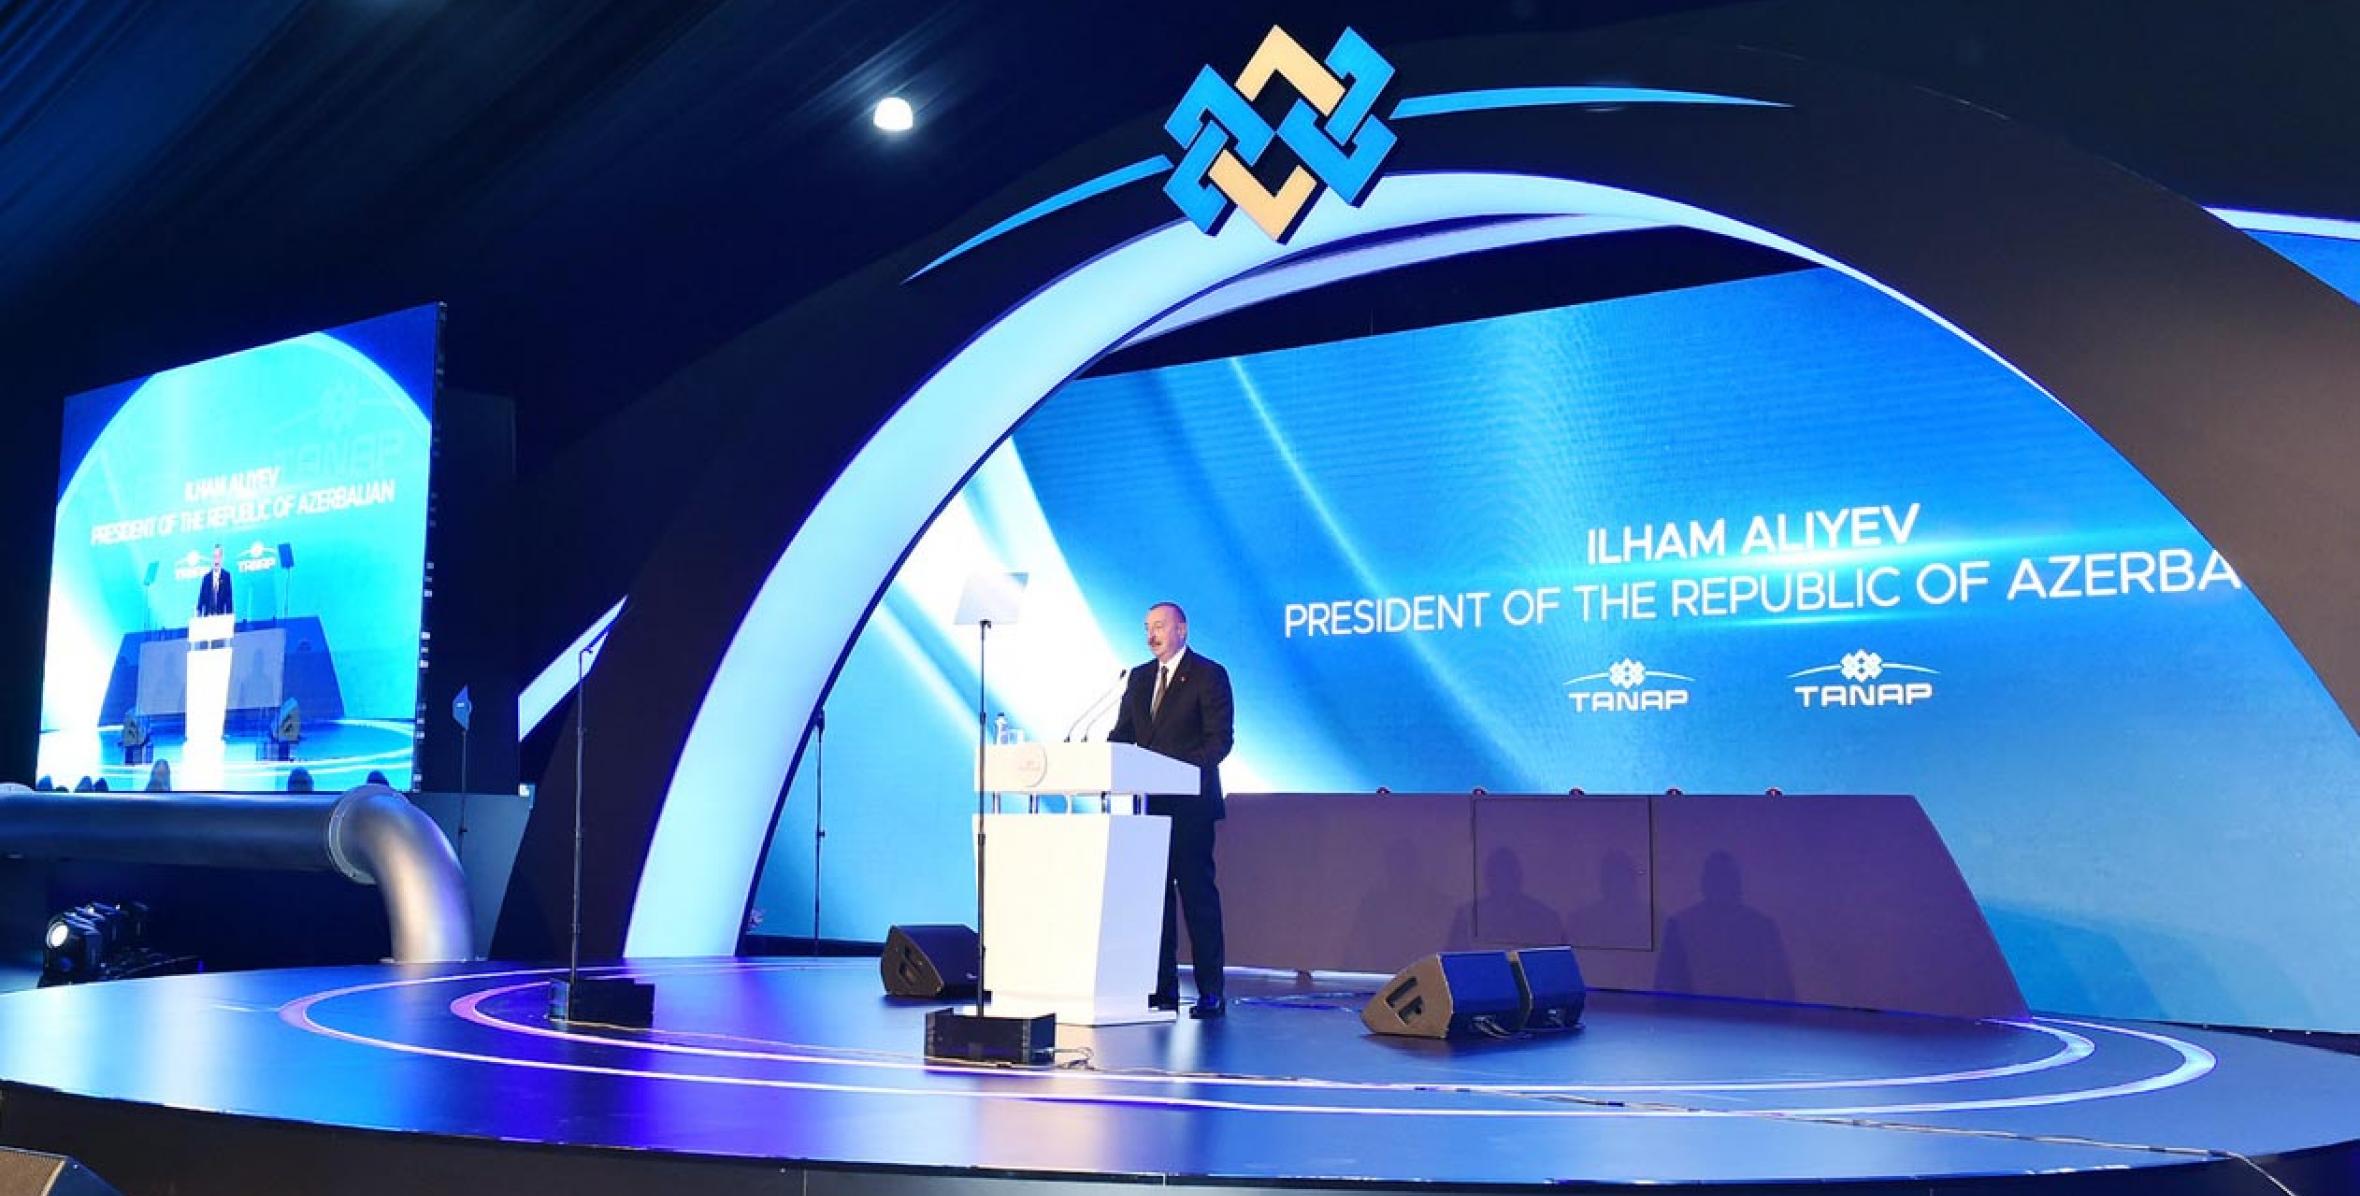 Речь Ильхама Алиева на открытии части проекта TANAP, которая будет соединена с Европой